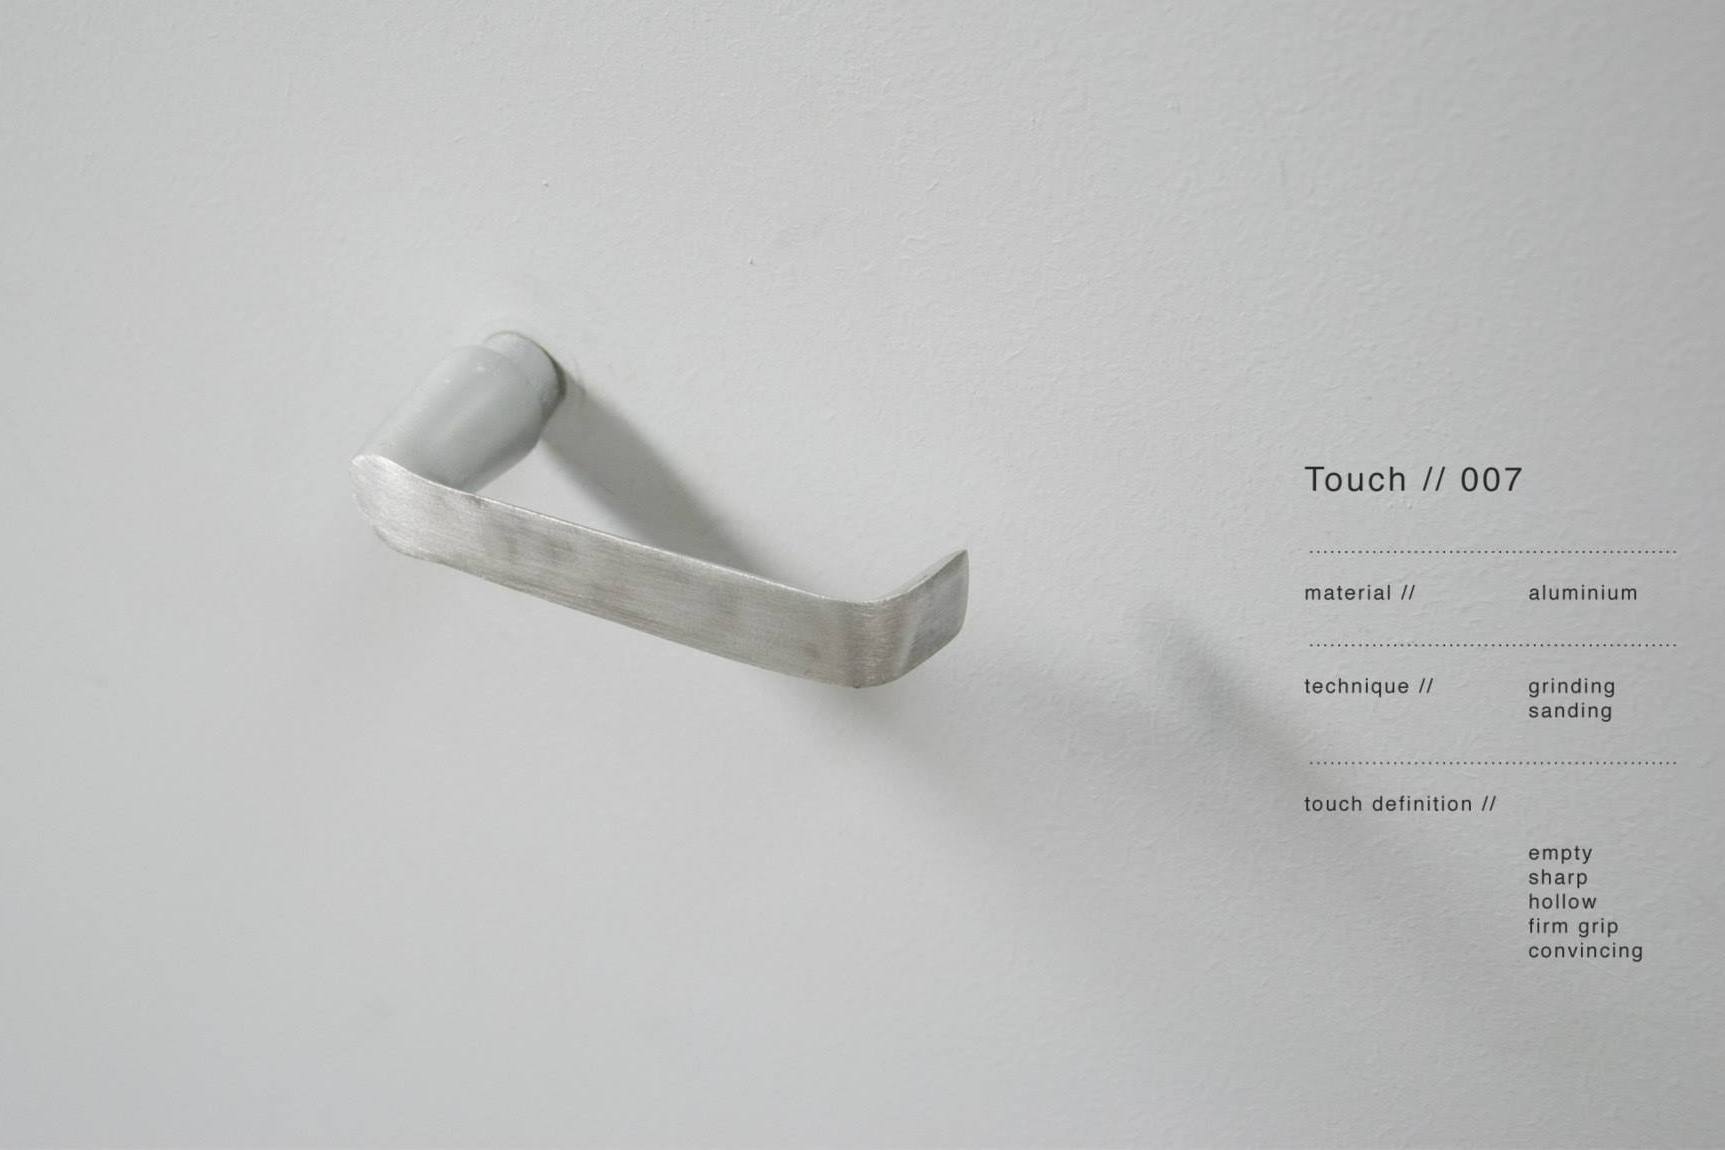 Проект Touch голландского дизайнера Рене Сибума